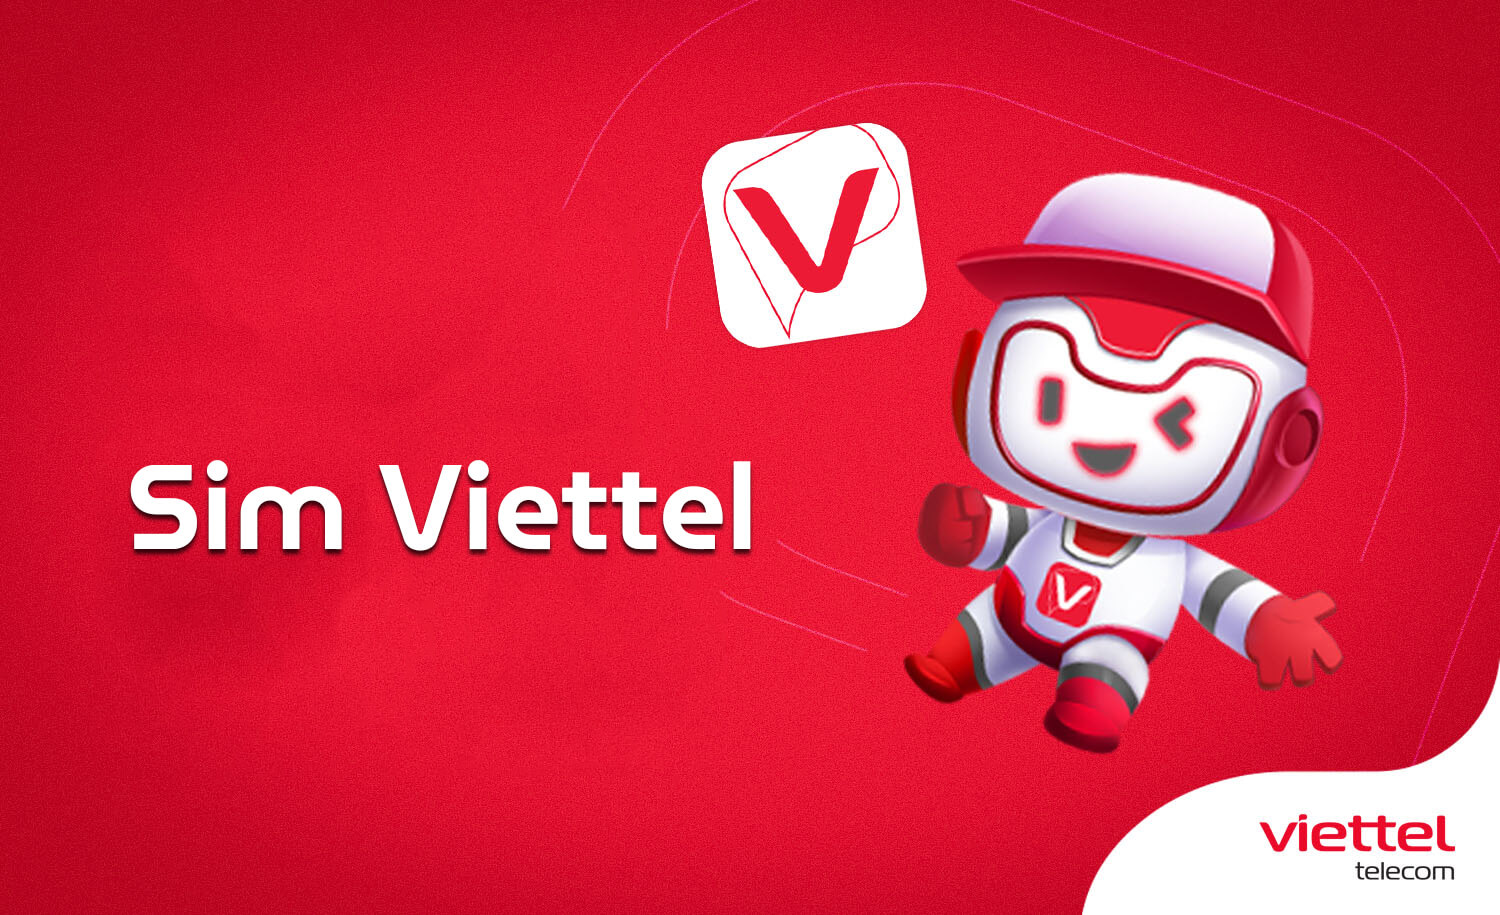 Viettel hỗ trợ người dùng đăng ký trực tuyến tại trang web của nhà mạng